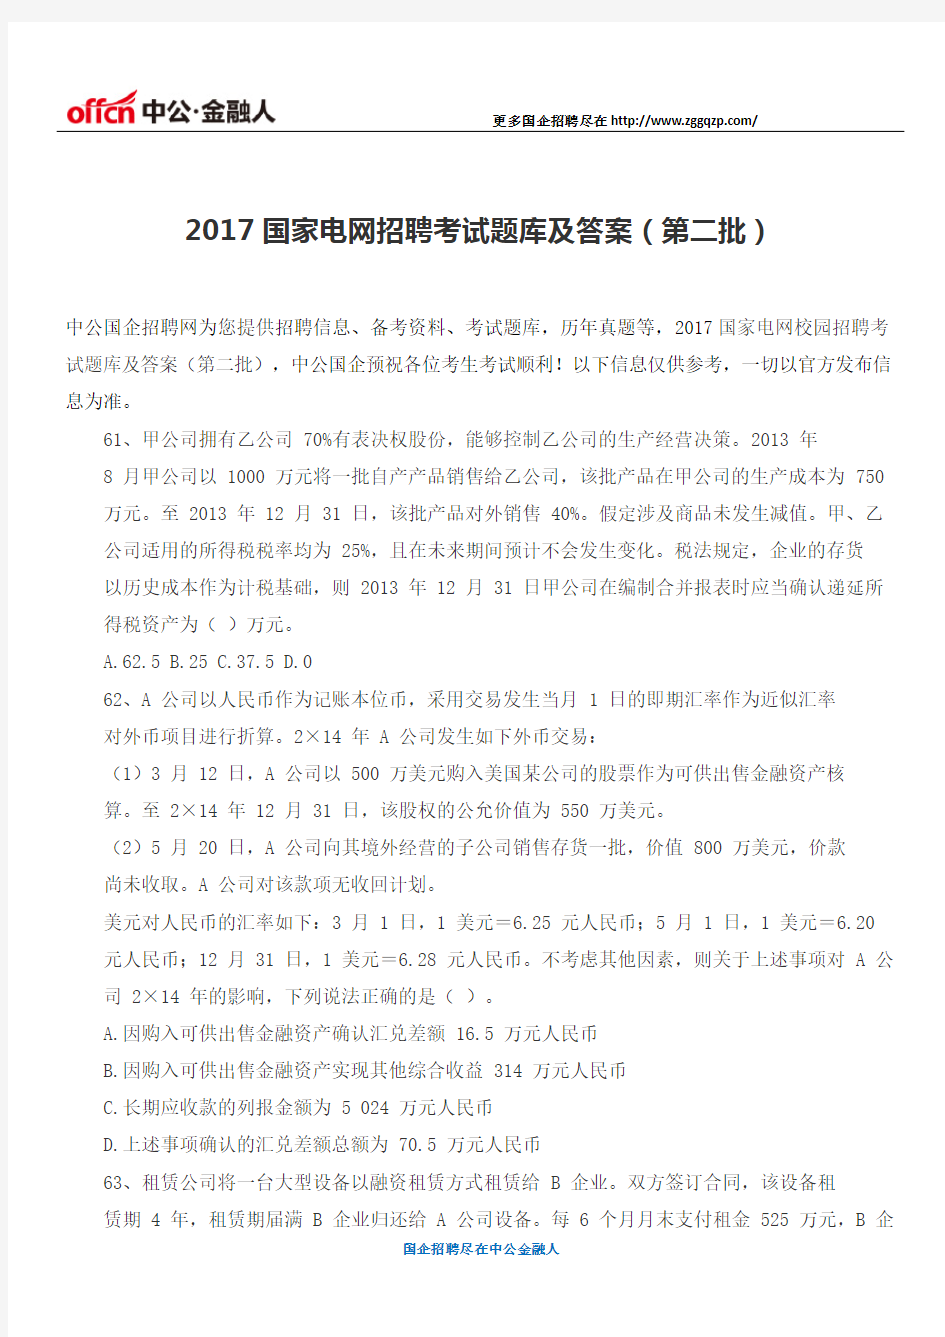 2017国家电网招聘考试题库及答案(第二批)